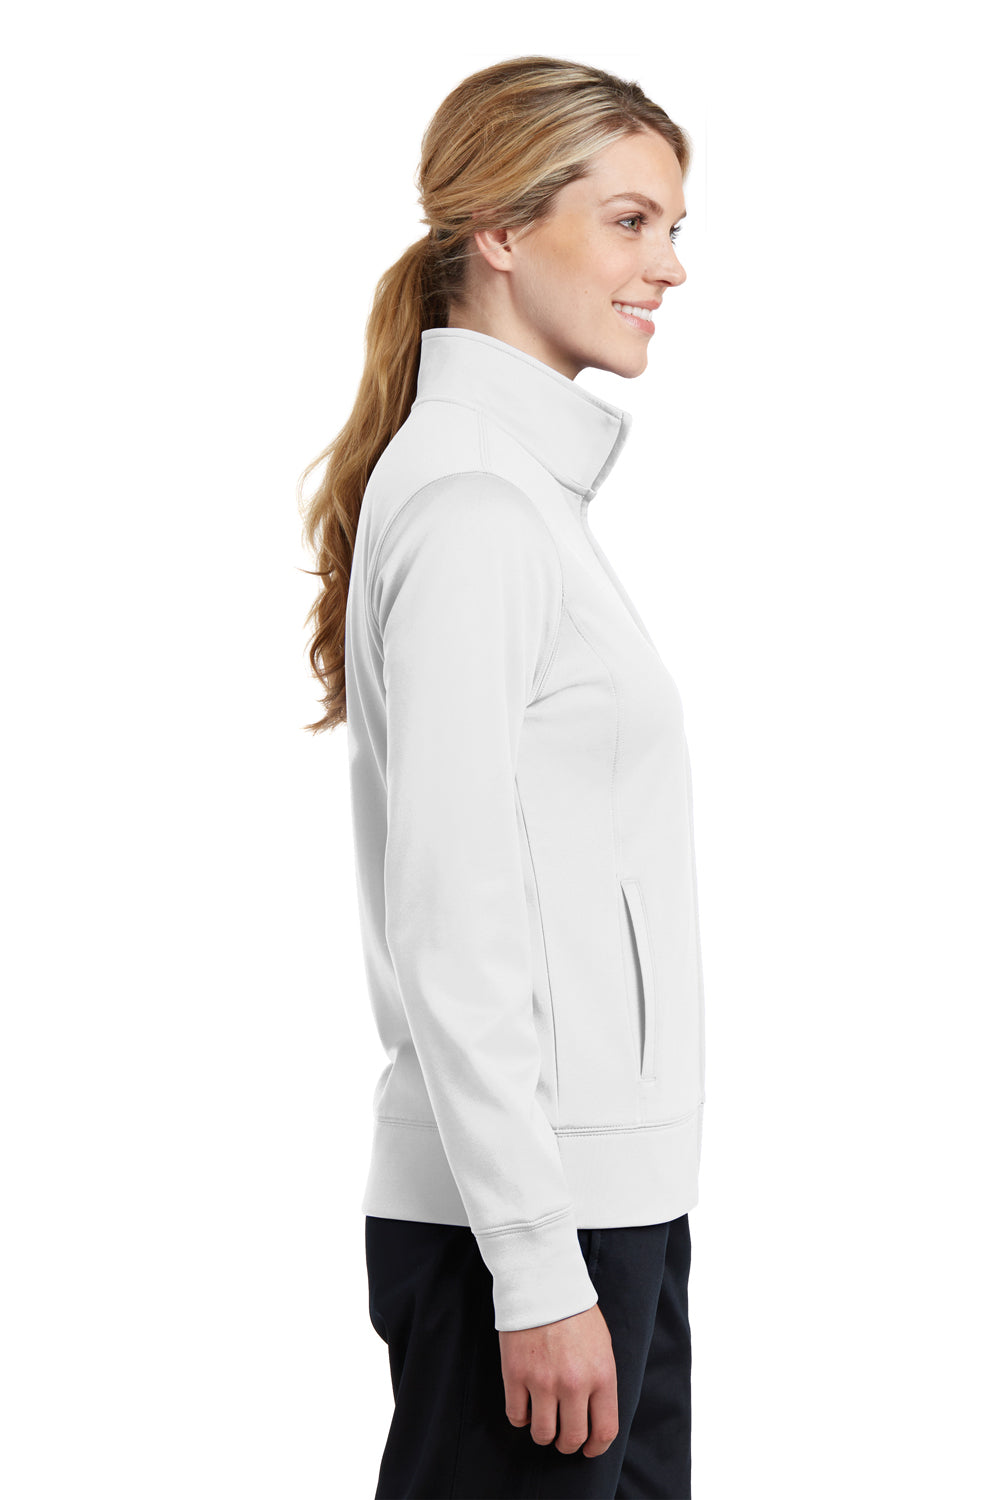 Sport-Tek LST241 Womens Sport-Wick Moisture Wicking Fleece Full Zip Sweatshirt White Side